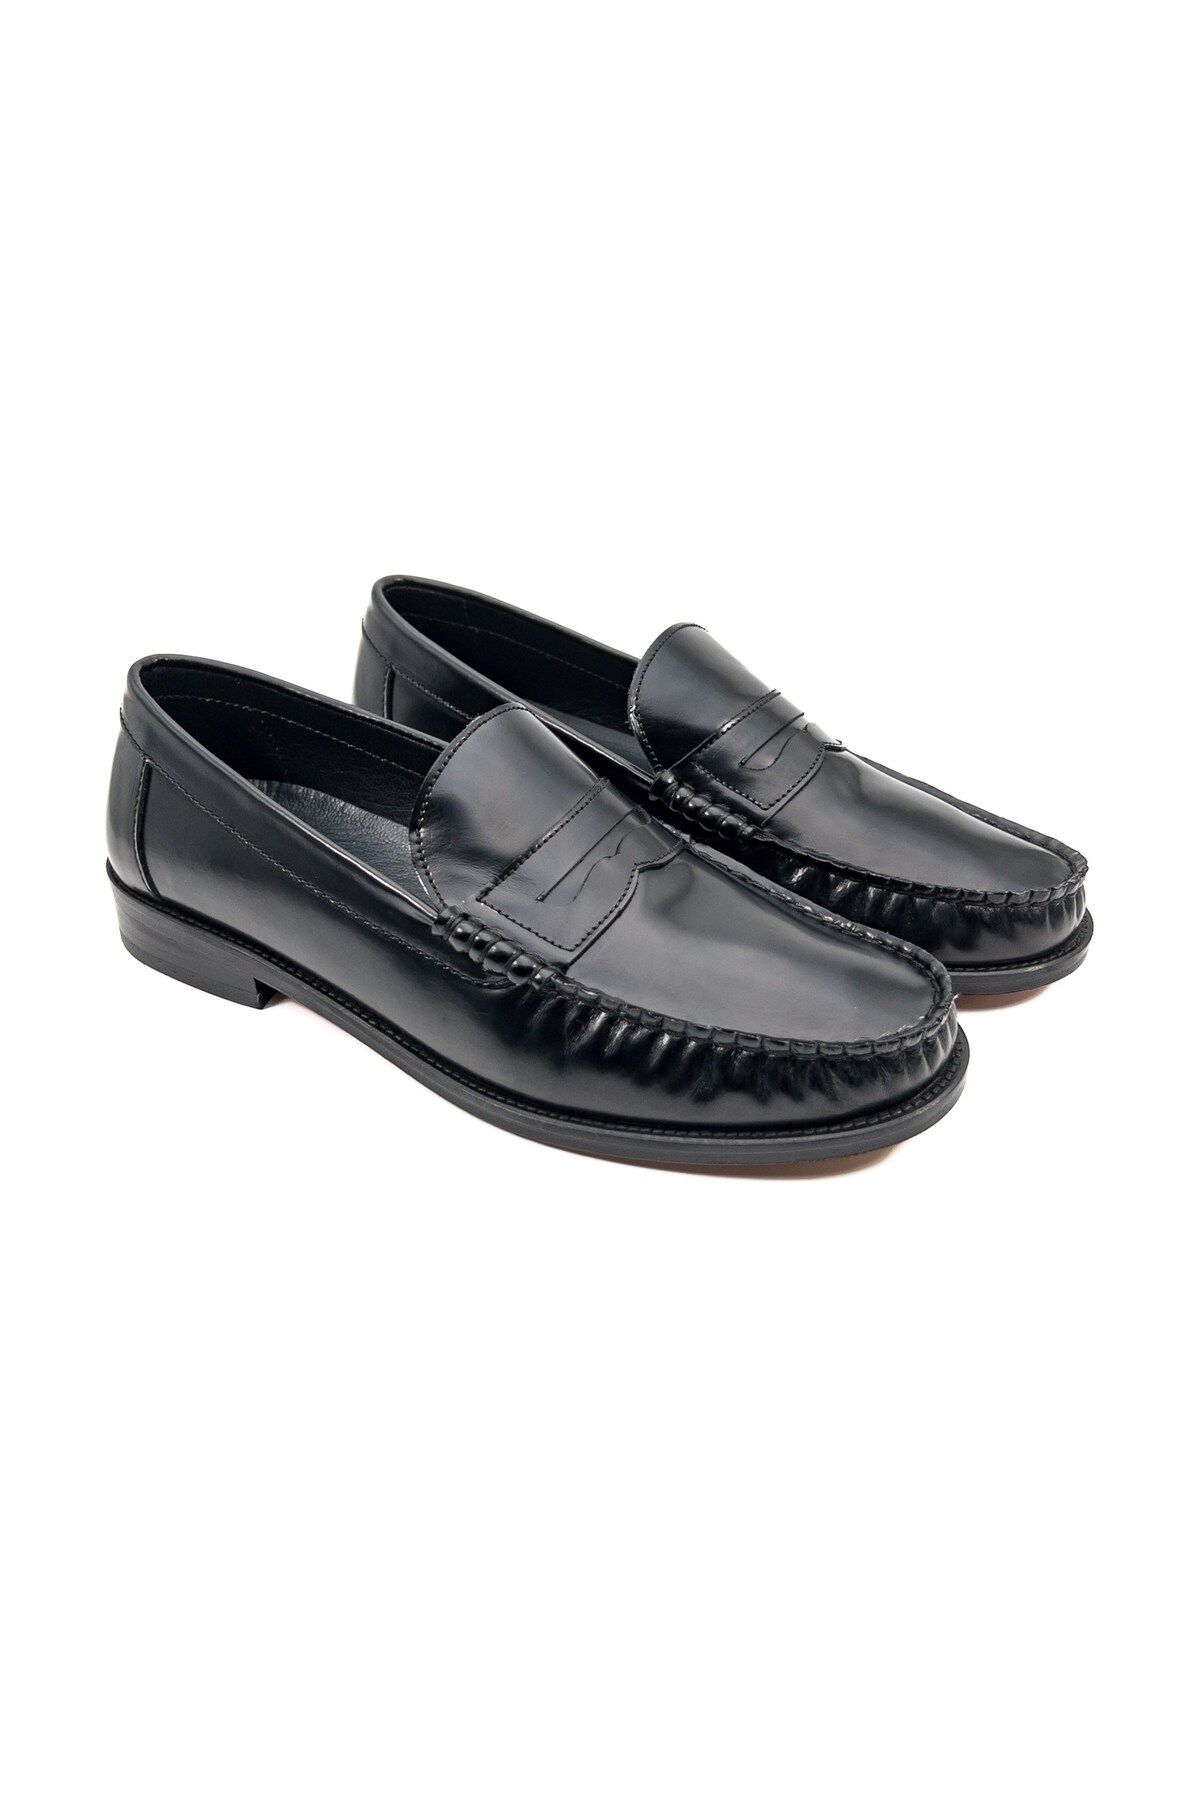 Ayakkabıhane Kösele Taban İçi Dışı Hakiki Deri Siyah Erkek Klasik Ayakkabı AHMSKL00086550AN